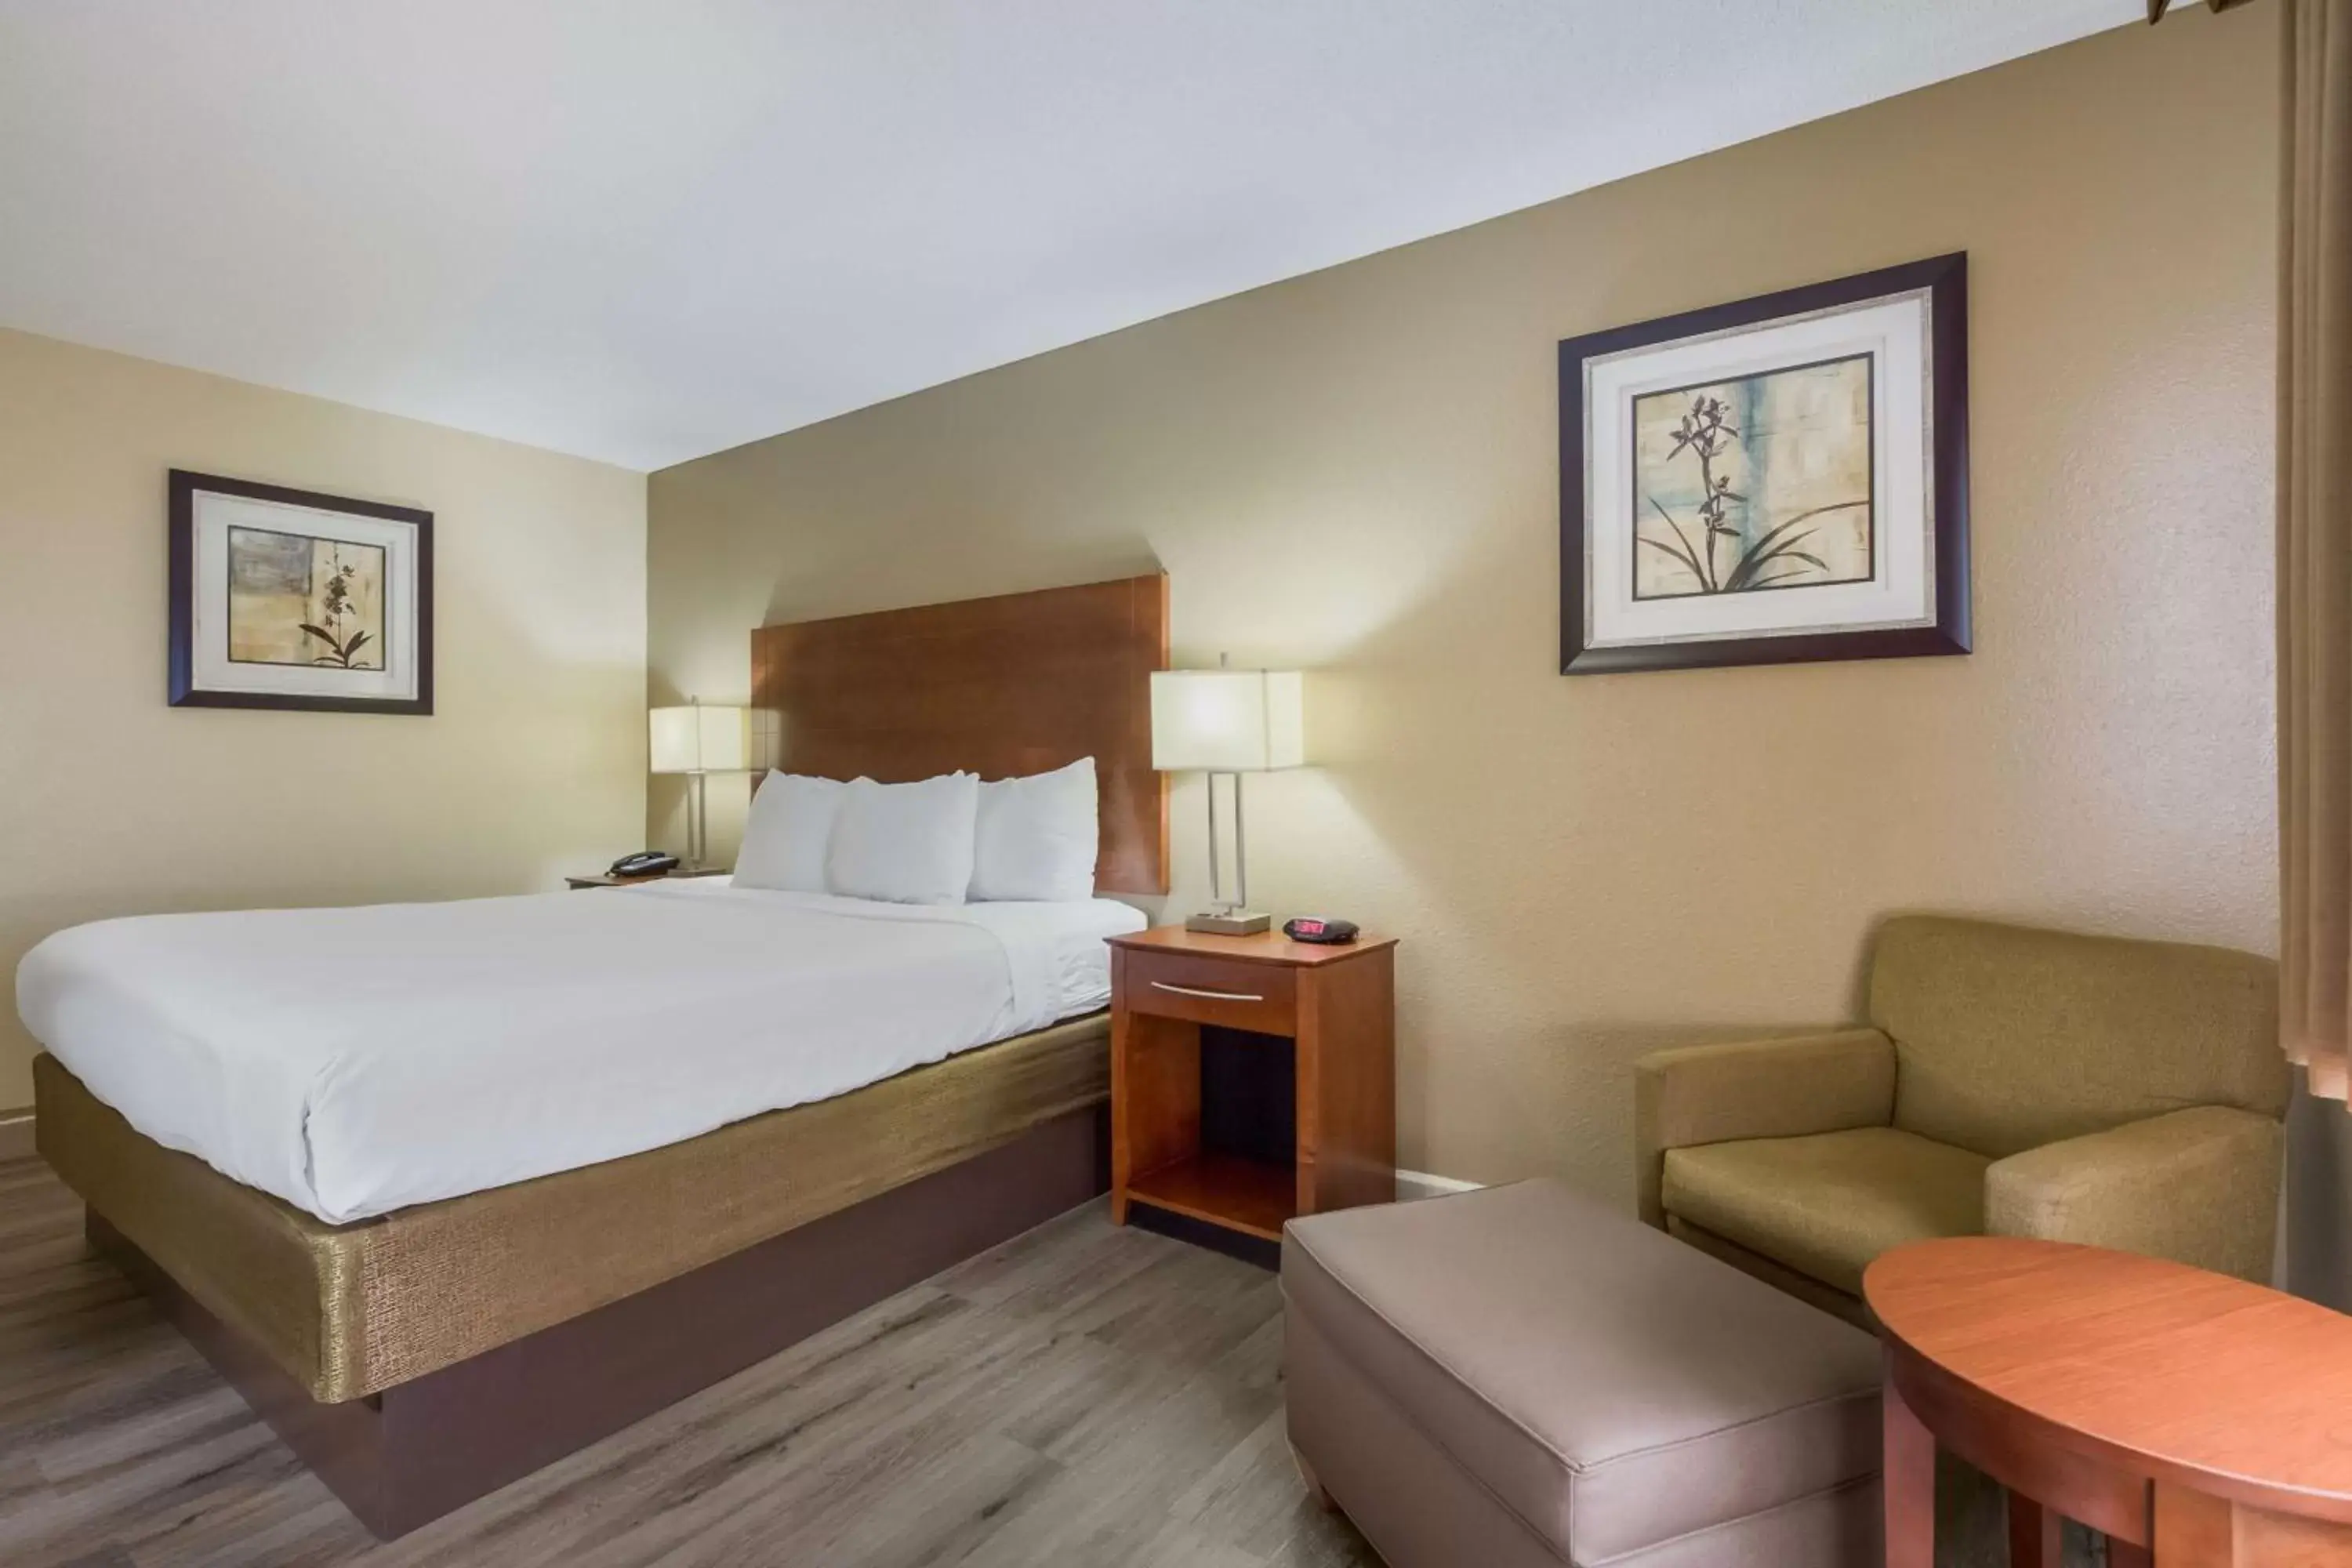 Bedroom, Bed in Best Western U.S. Inn